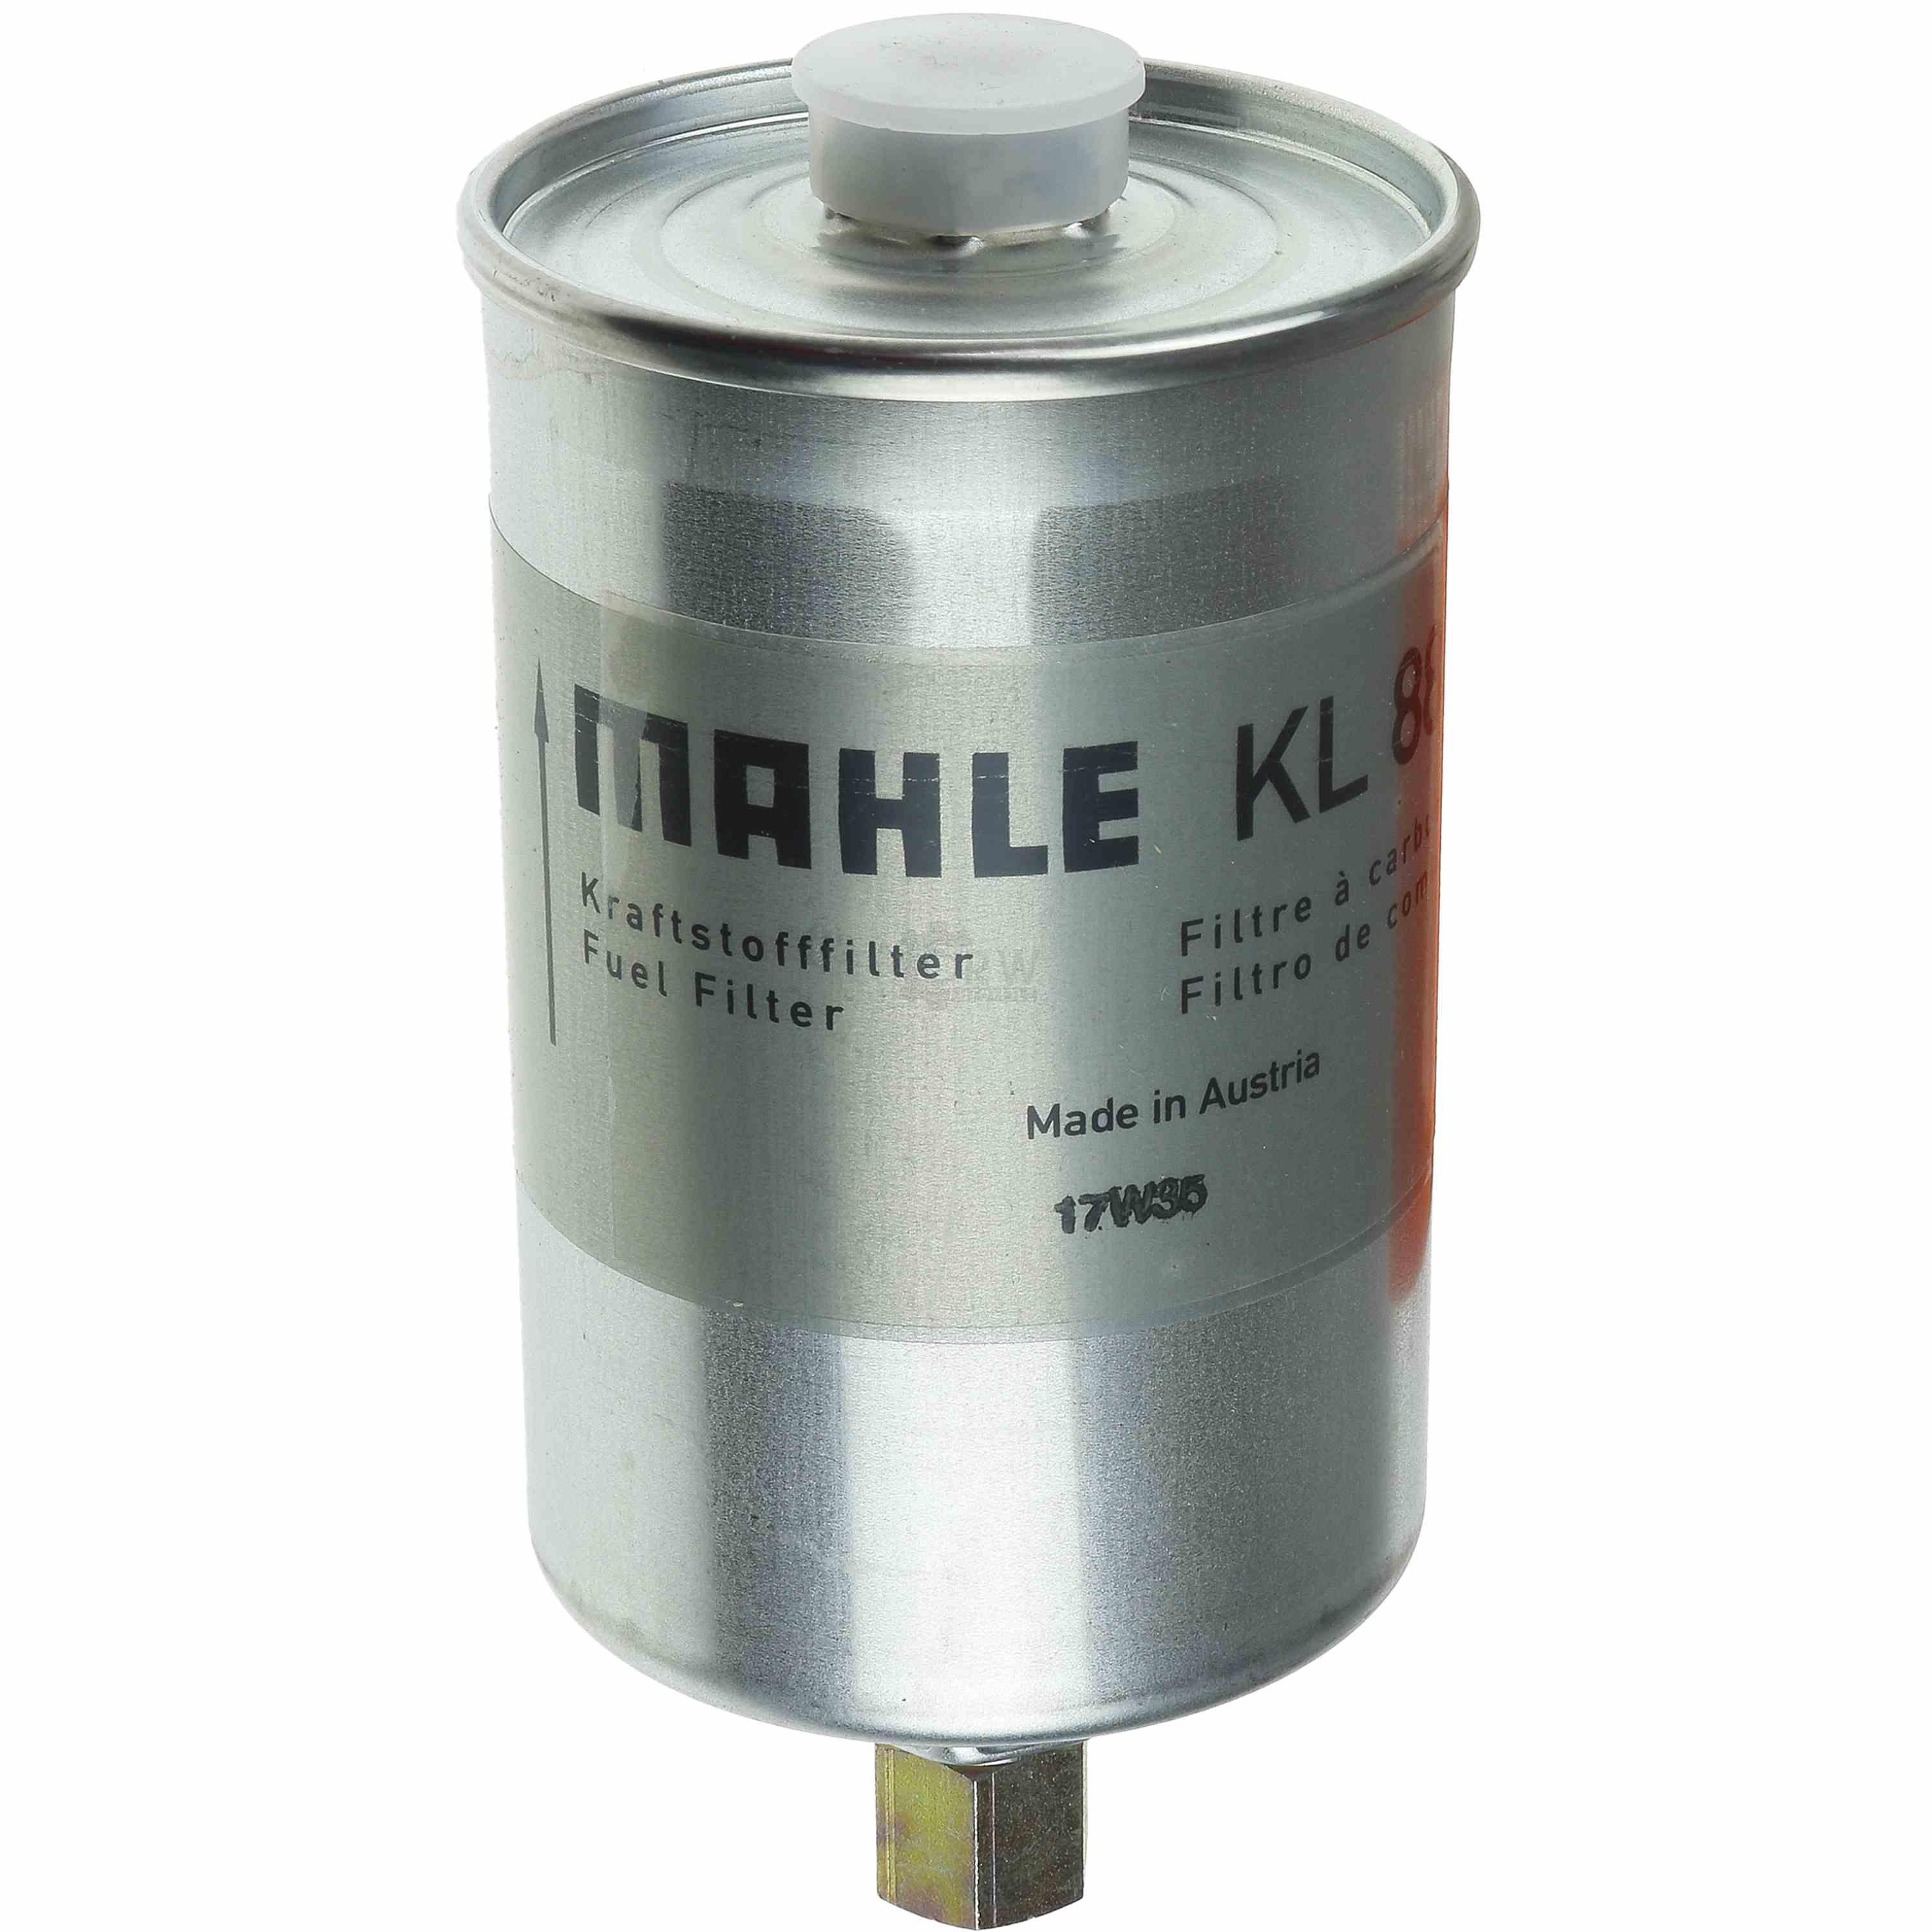 MAHLE Kraftstofffilter KL 88 Fuel Filter